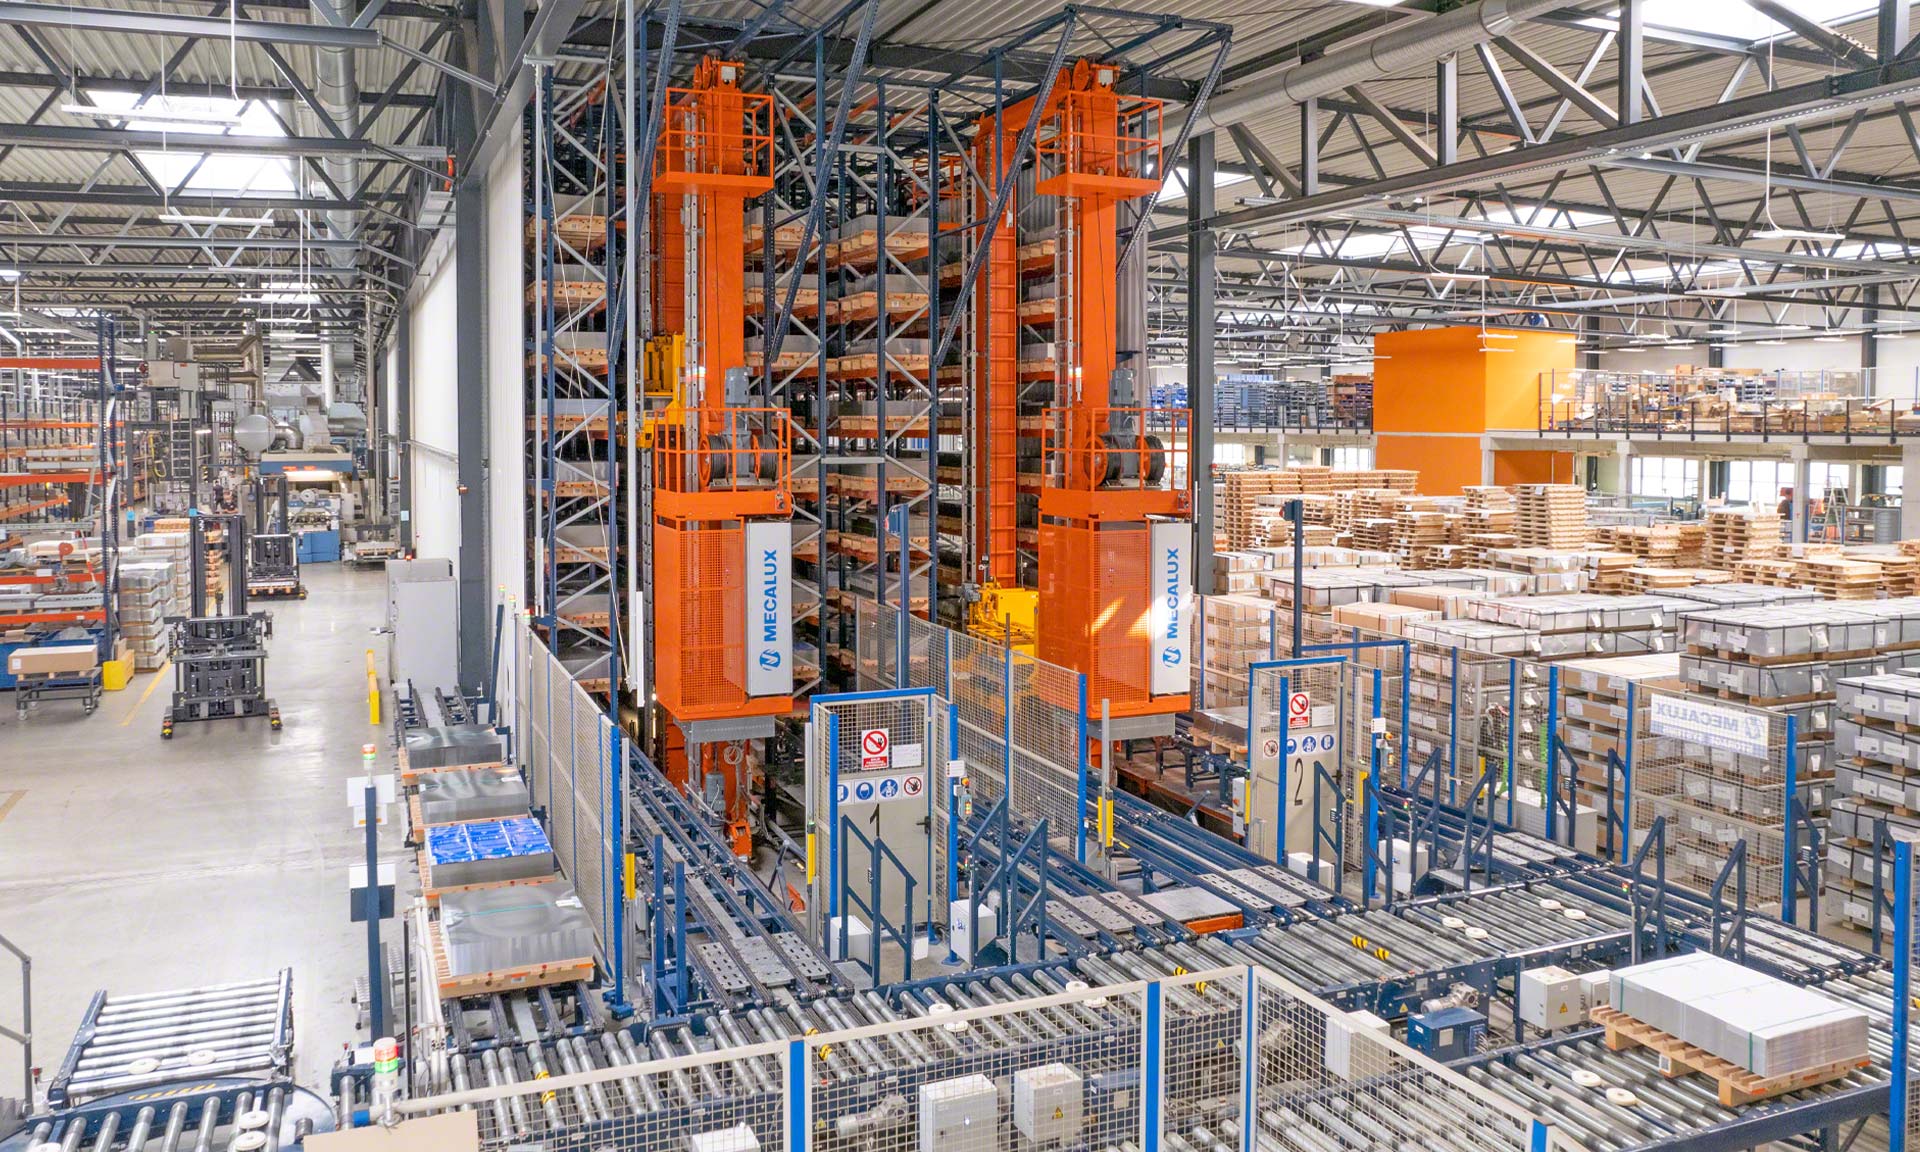 Blechwarenfabrik: la fabbrica di contenitori metallici più moderna d'Europa